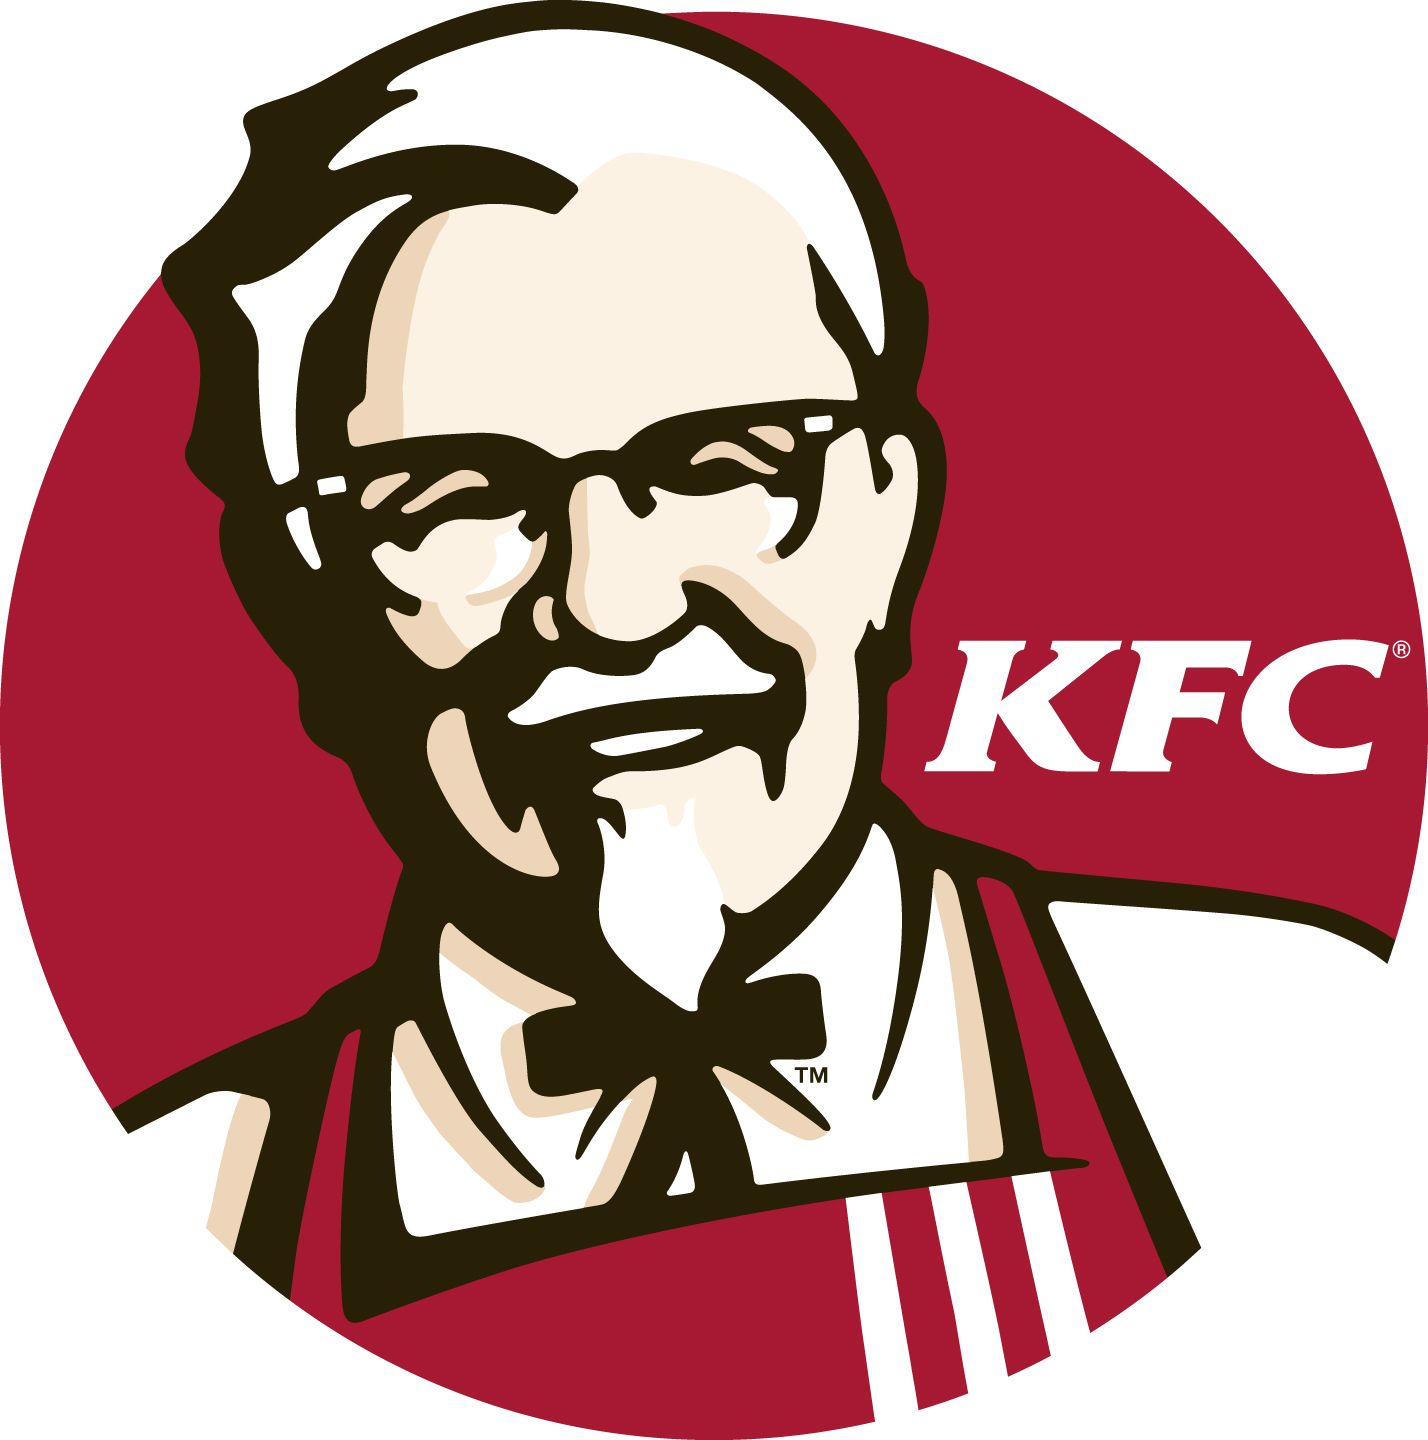                 Ofertas KFC 
                